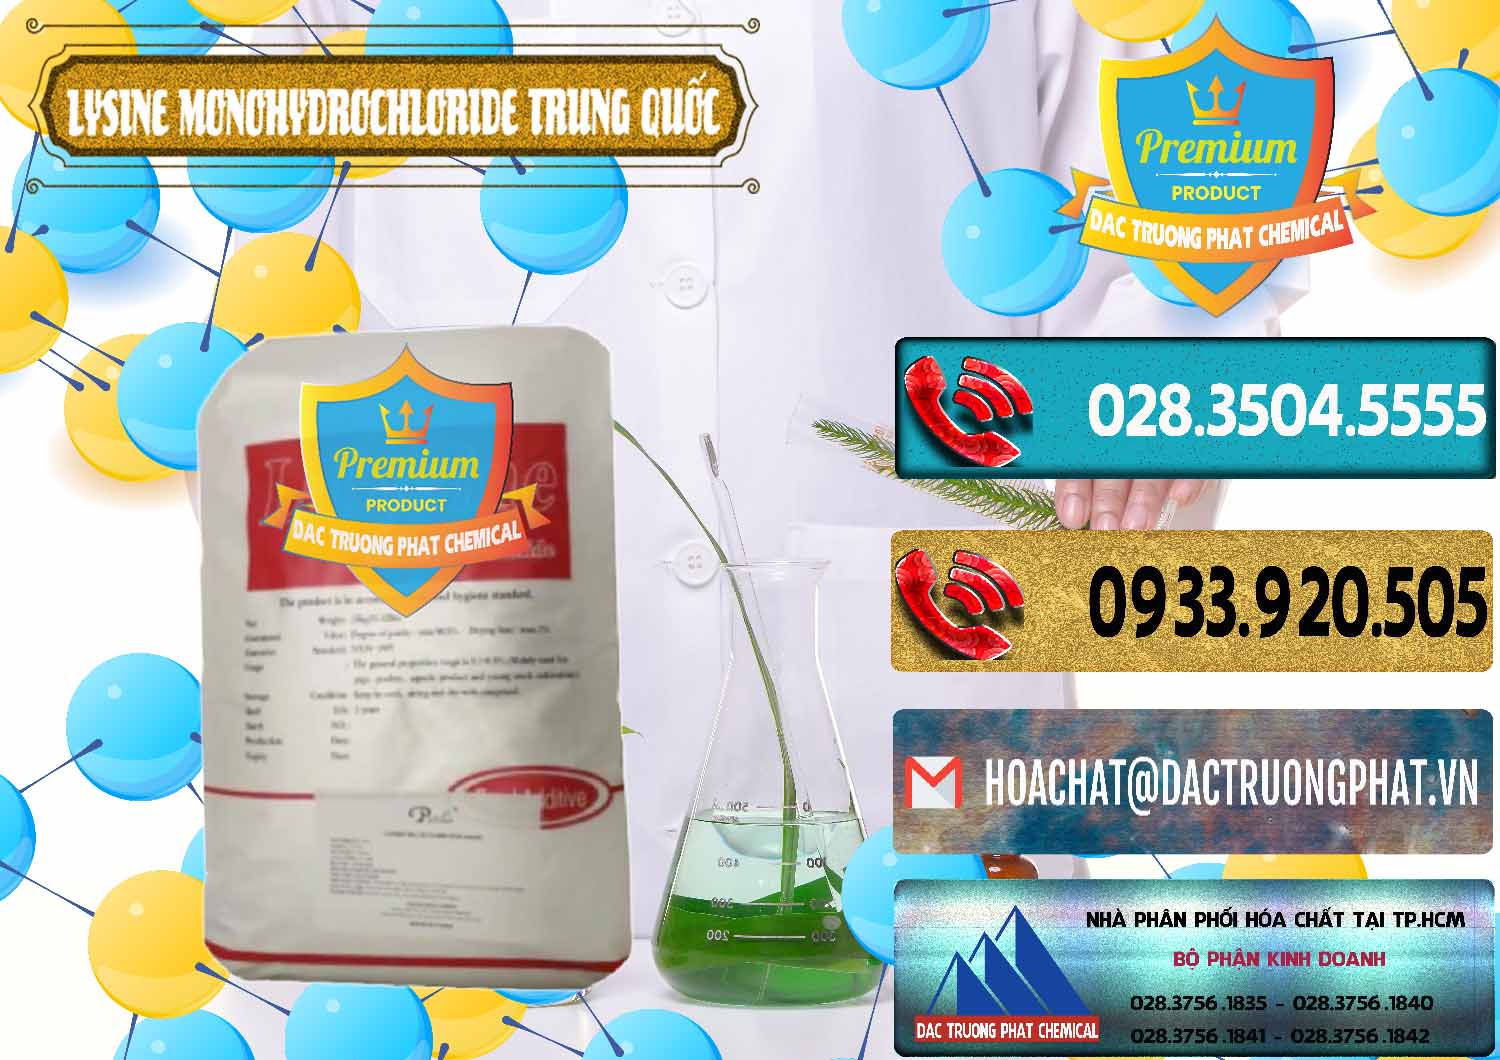 Công ty chuyên kinh doanh & bán L-Lysine Monohydrochloride Feed Grade Trung Quốc China - 0454 - Đơn vị kinh doanh ( phân phối ) hóa chất tại TP.HCM - hoachatdetnhuom.com